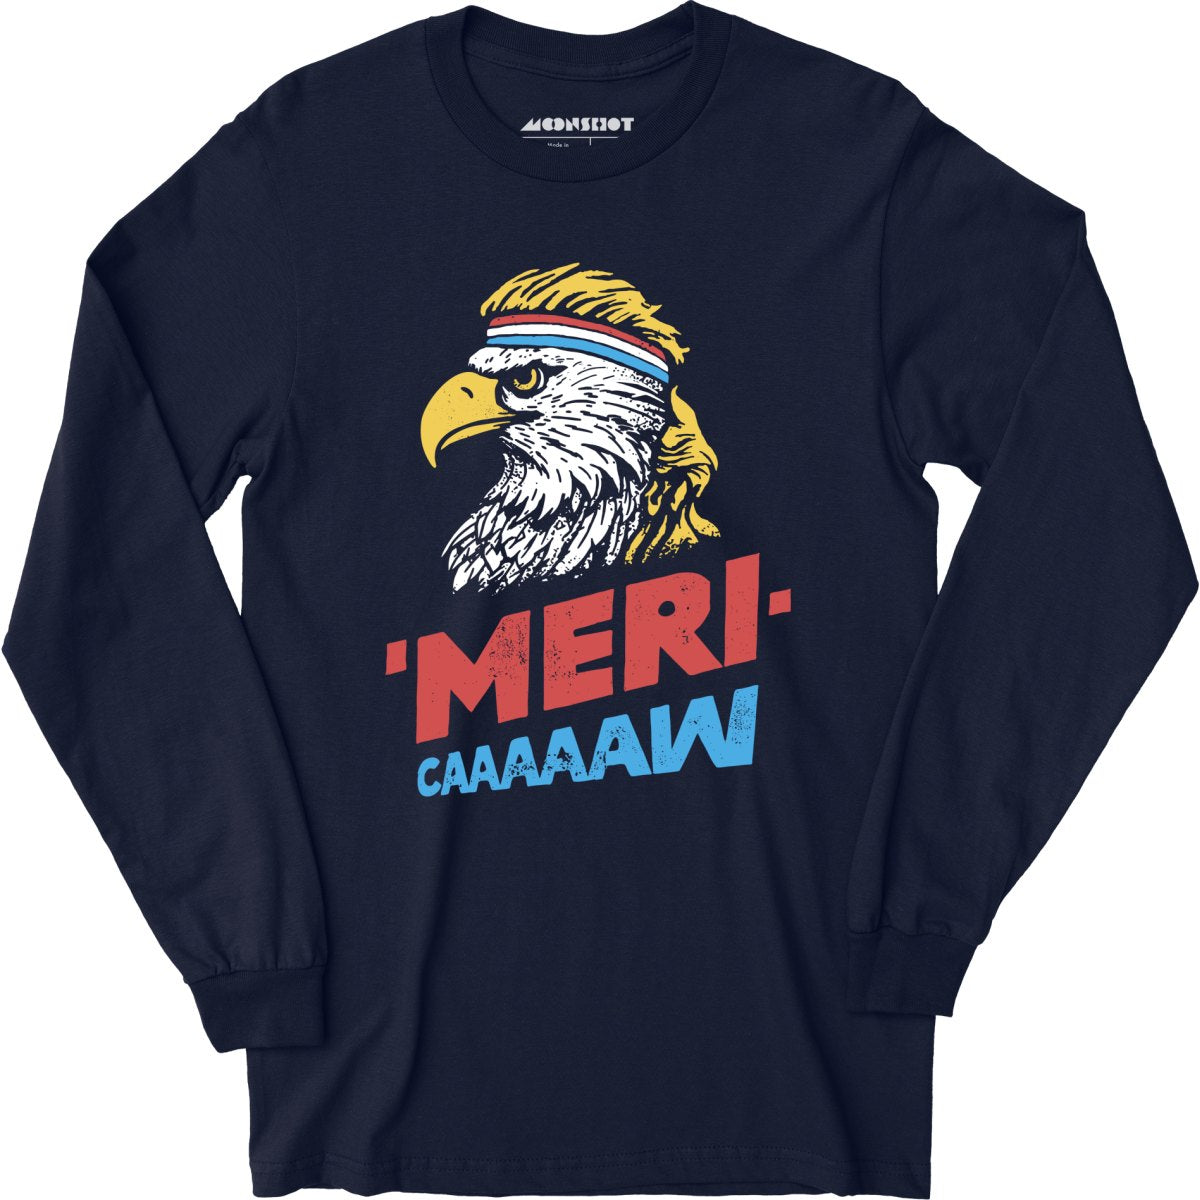 Meri-caaaaaw - Long Sleeve T-Shirt